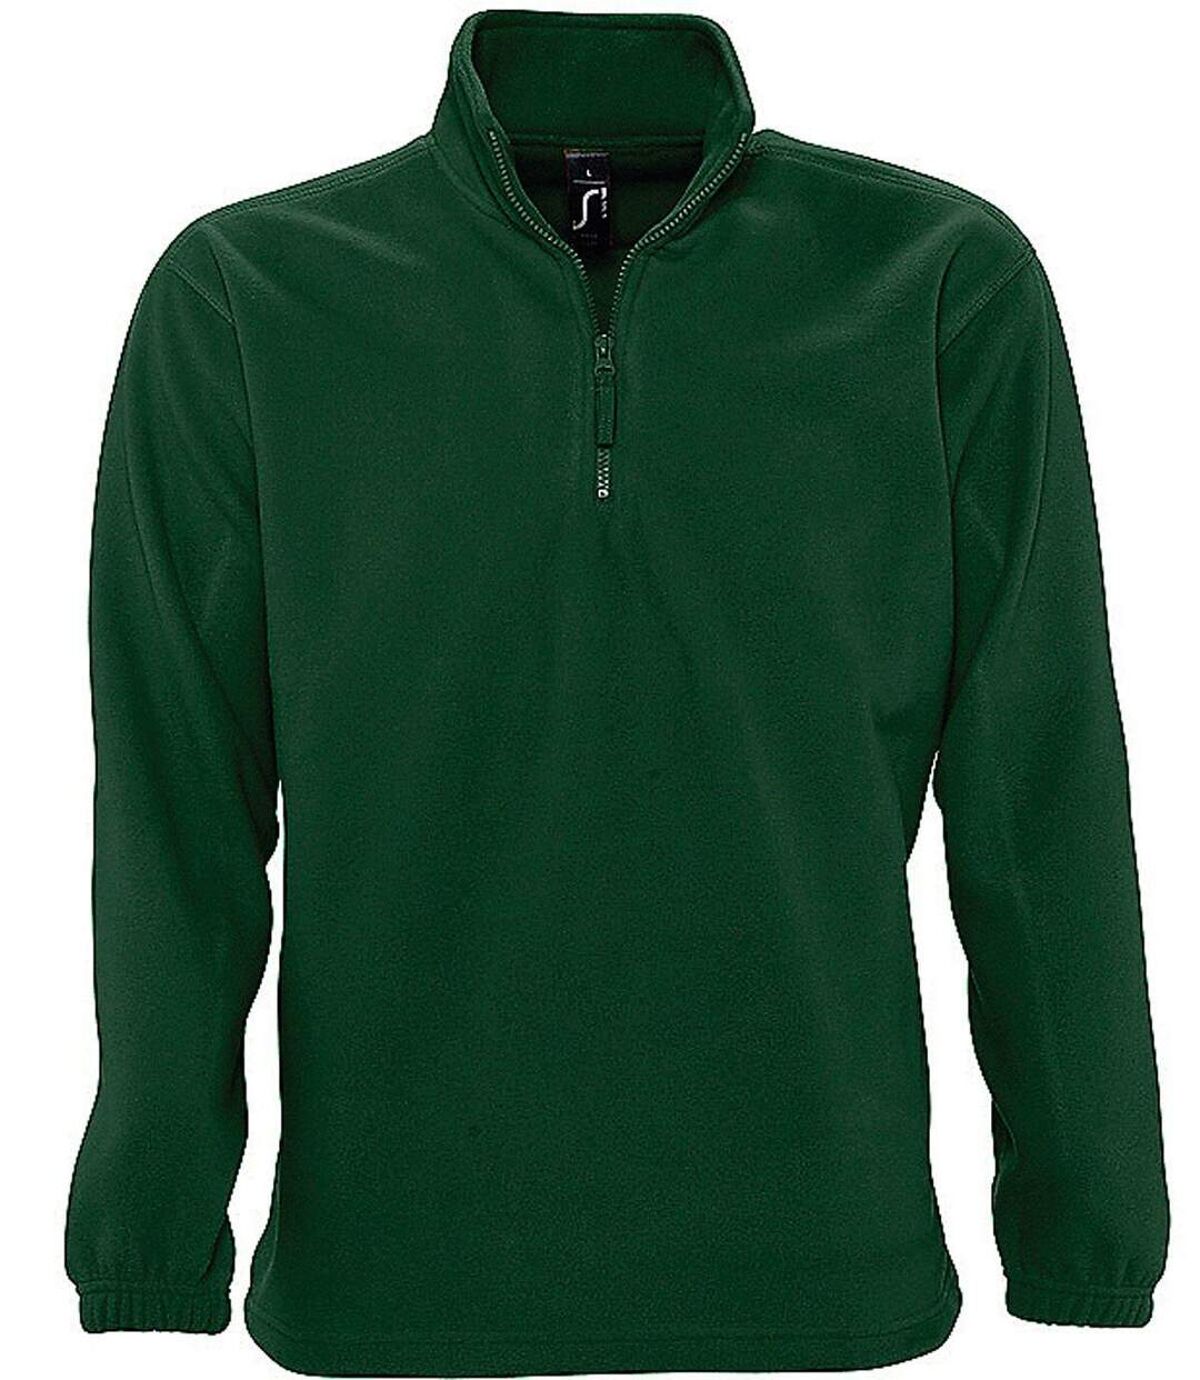 Sweat shirt polaire col zippé - 56000 - vert sapin